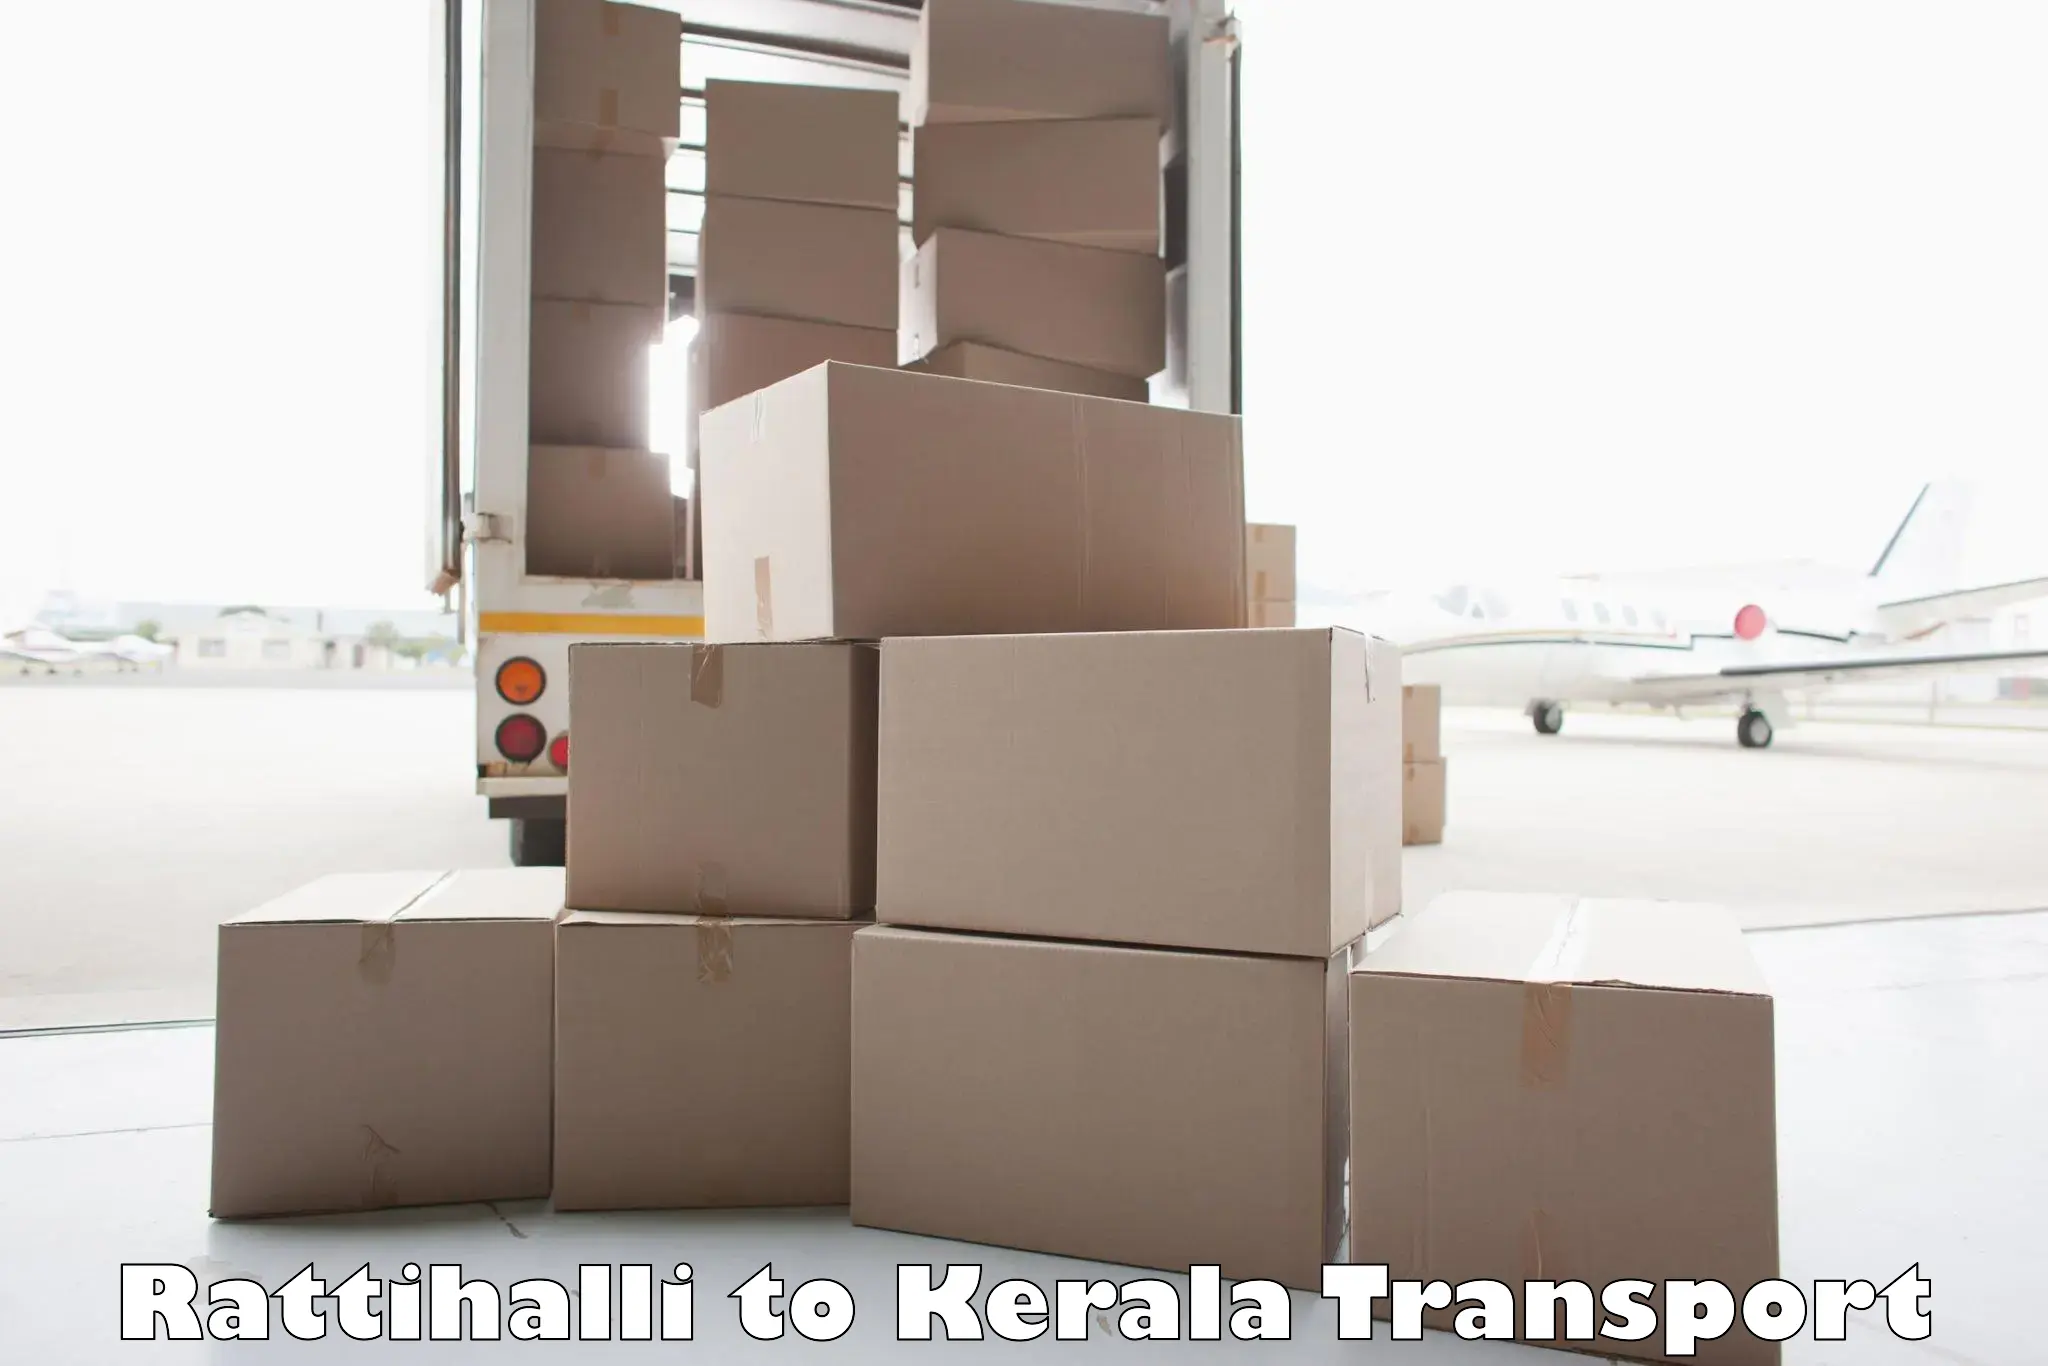 Vehicle parcel service Rattihalli to Kannur